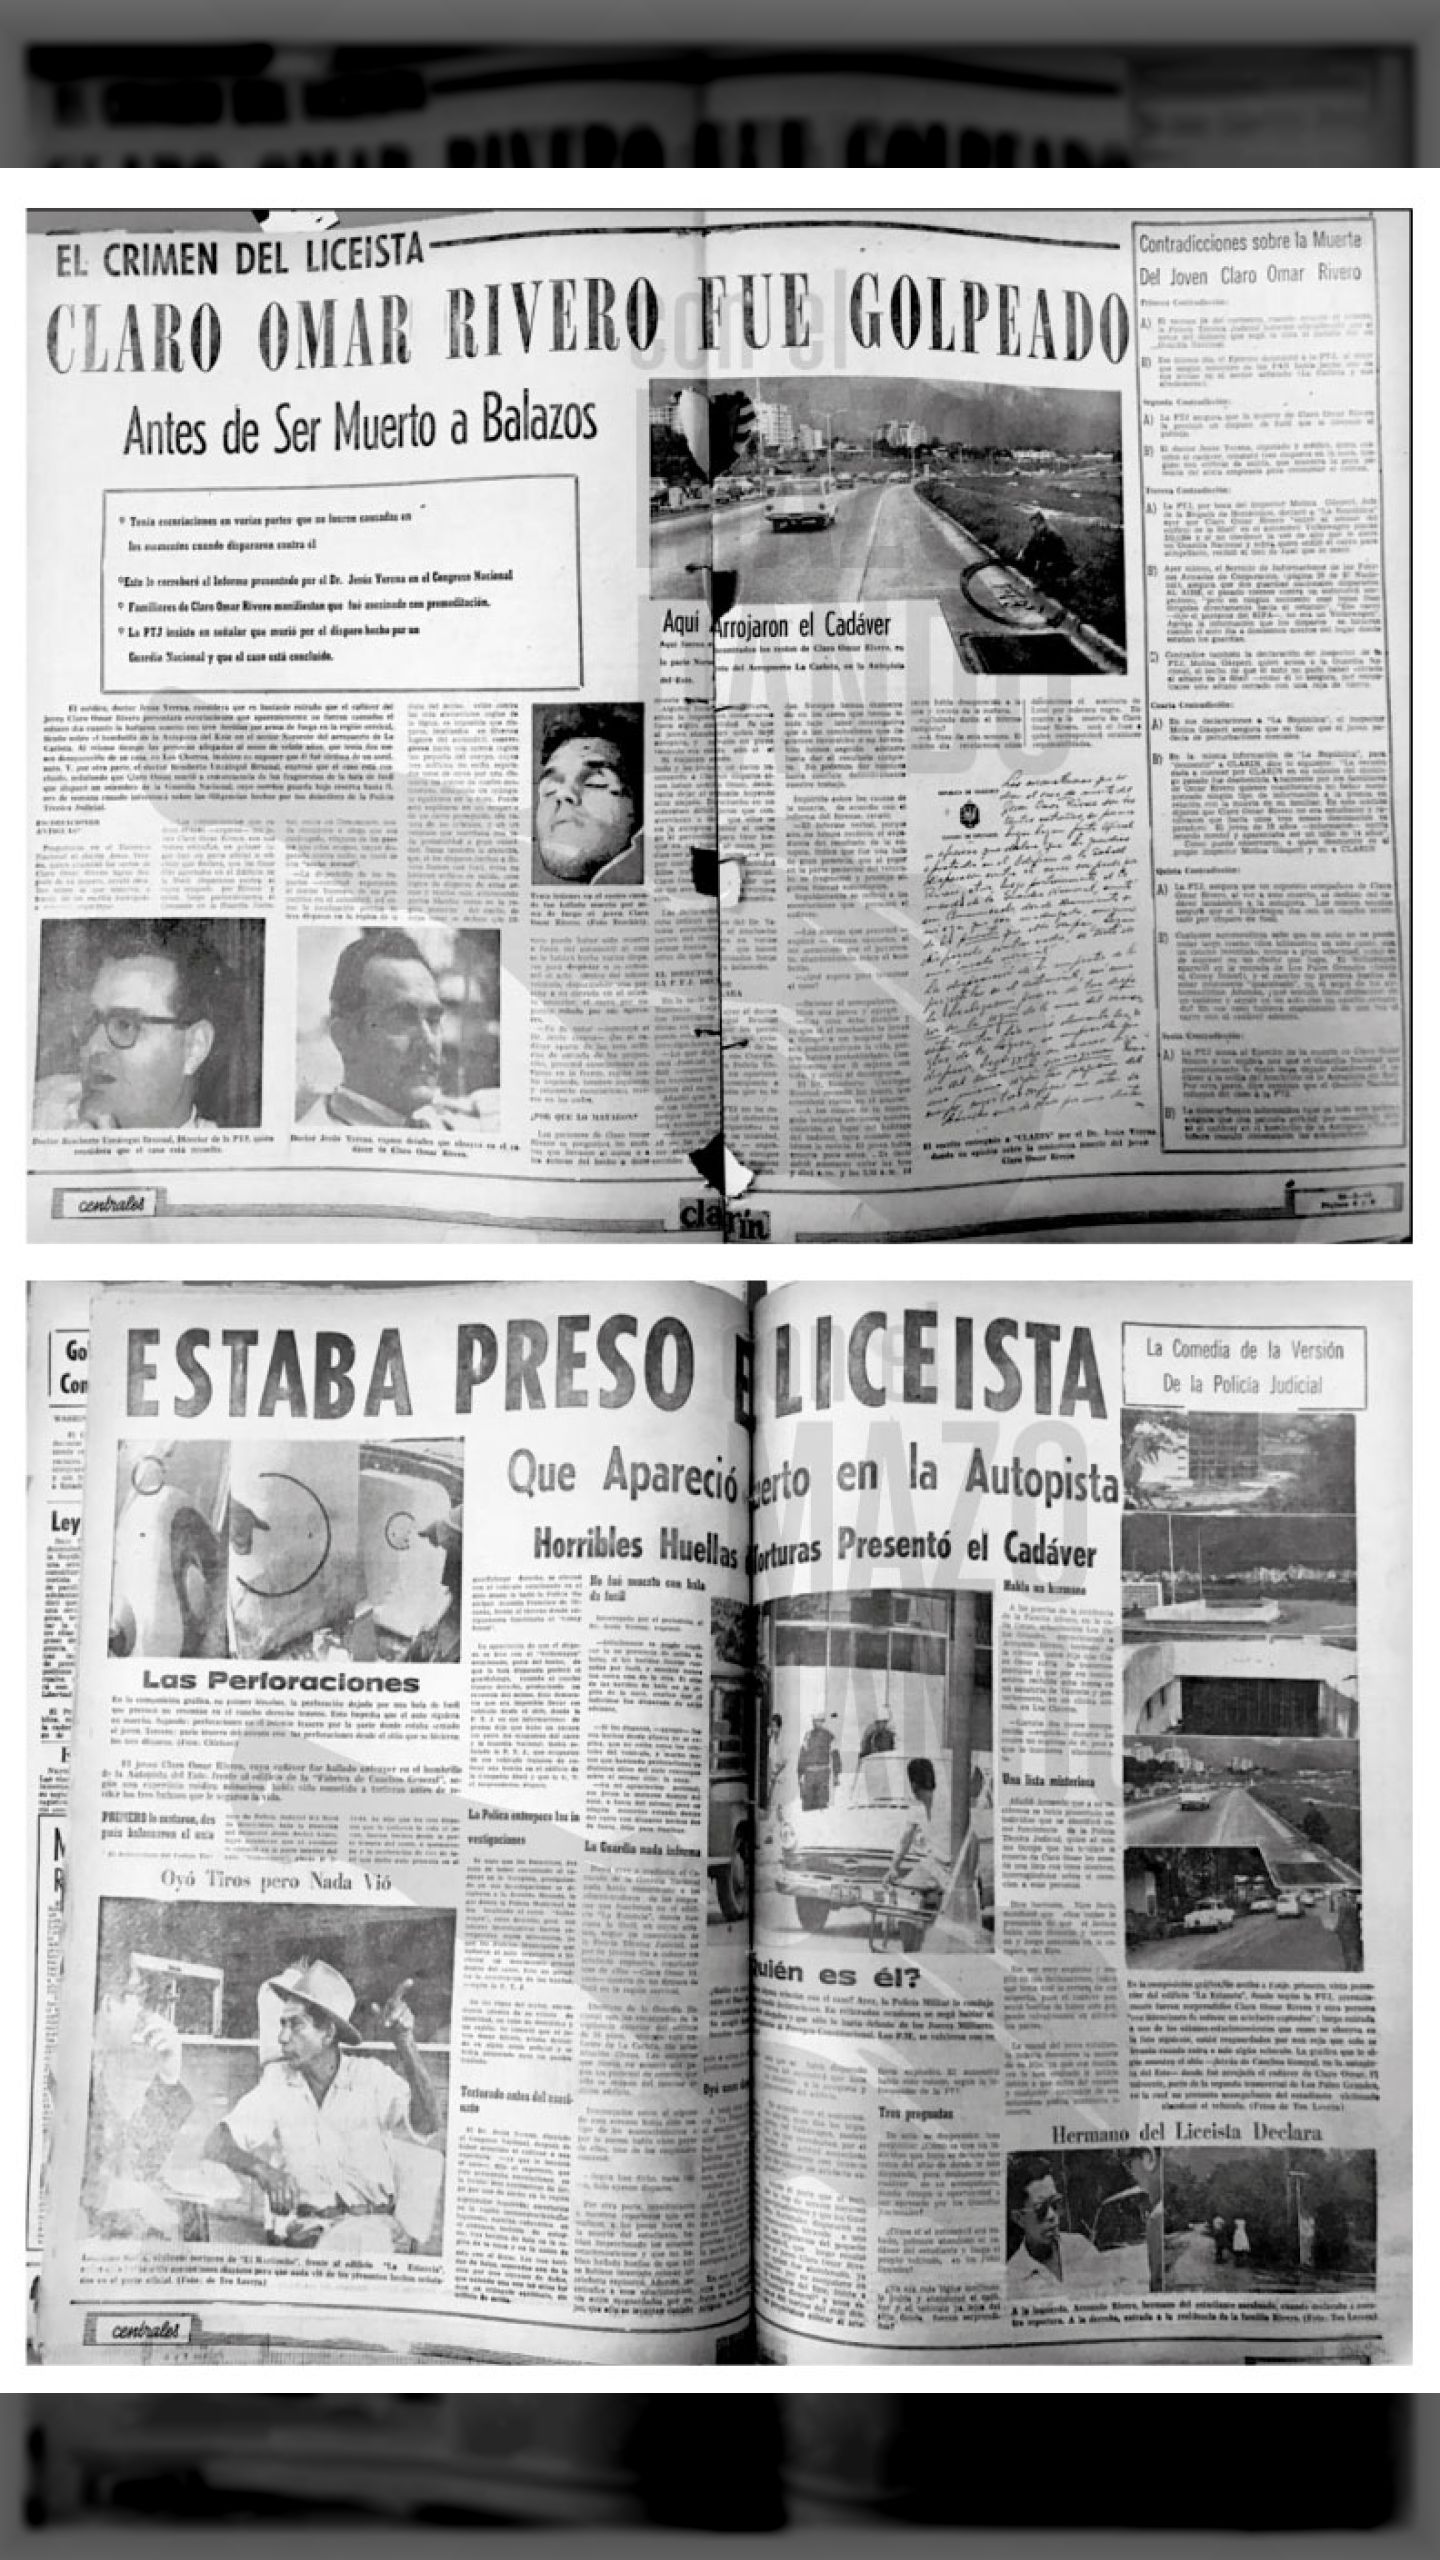 CLARO OMAR RIVERO - OTRA VÍCTIMA DE LA IV REPÚBLICA (CLARIN, 25 de mayo 1963)